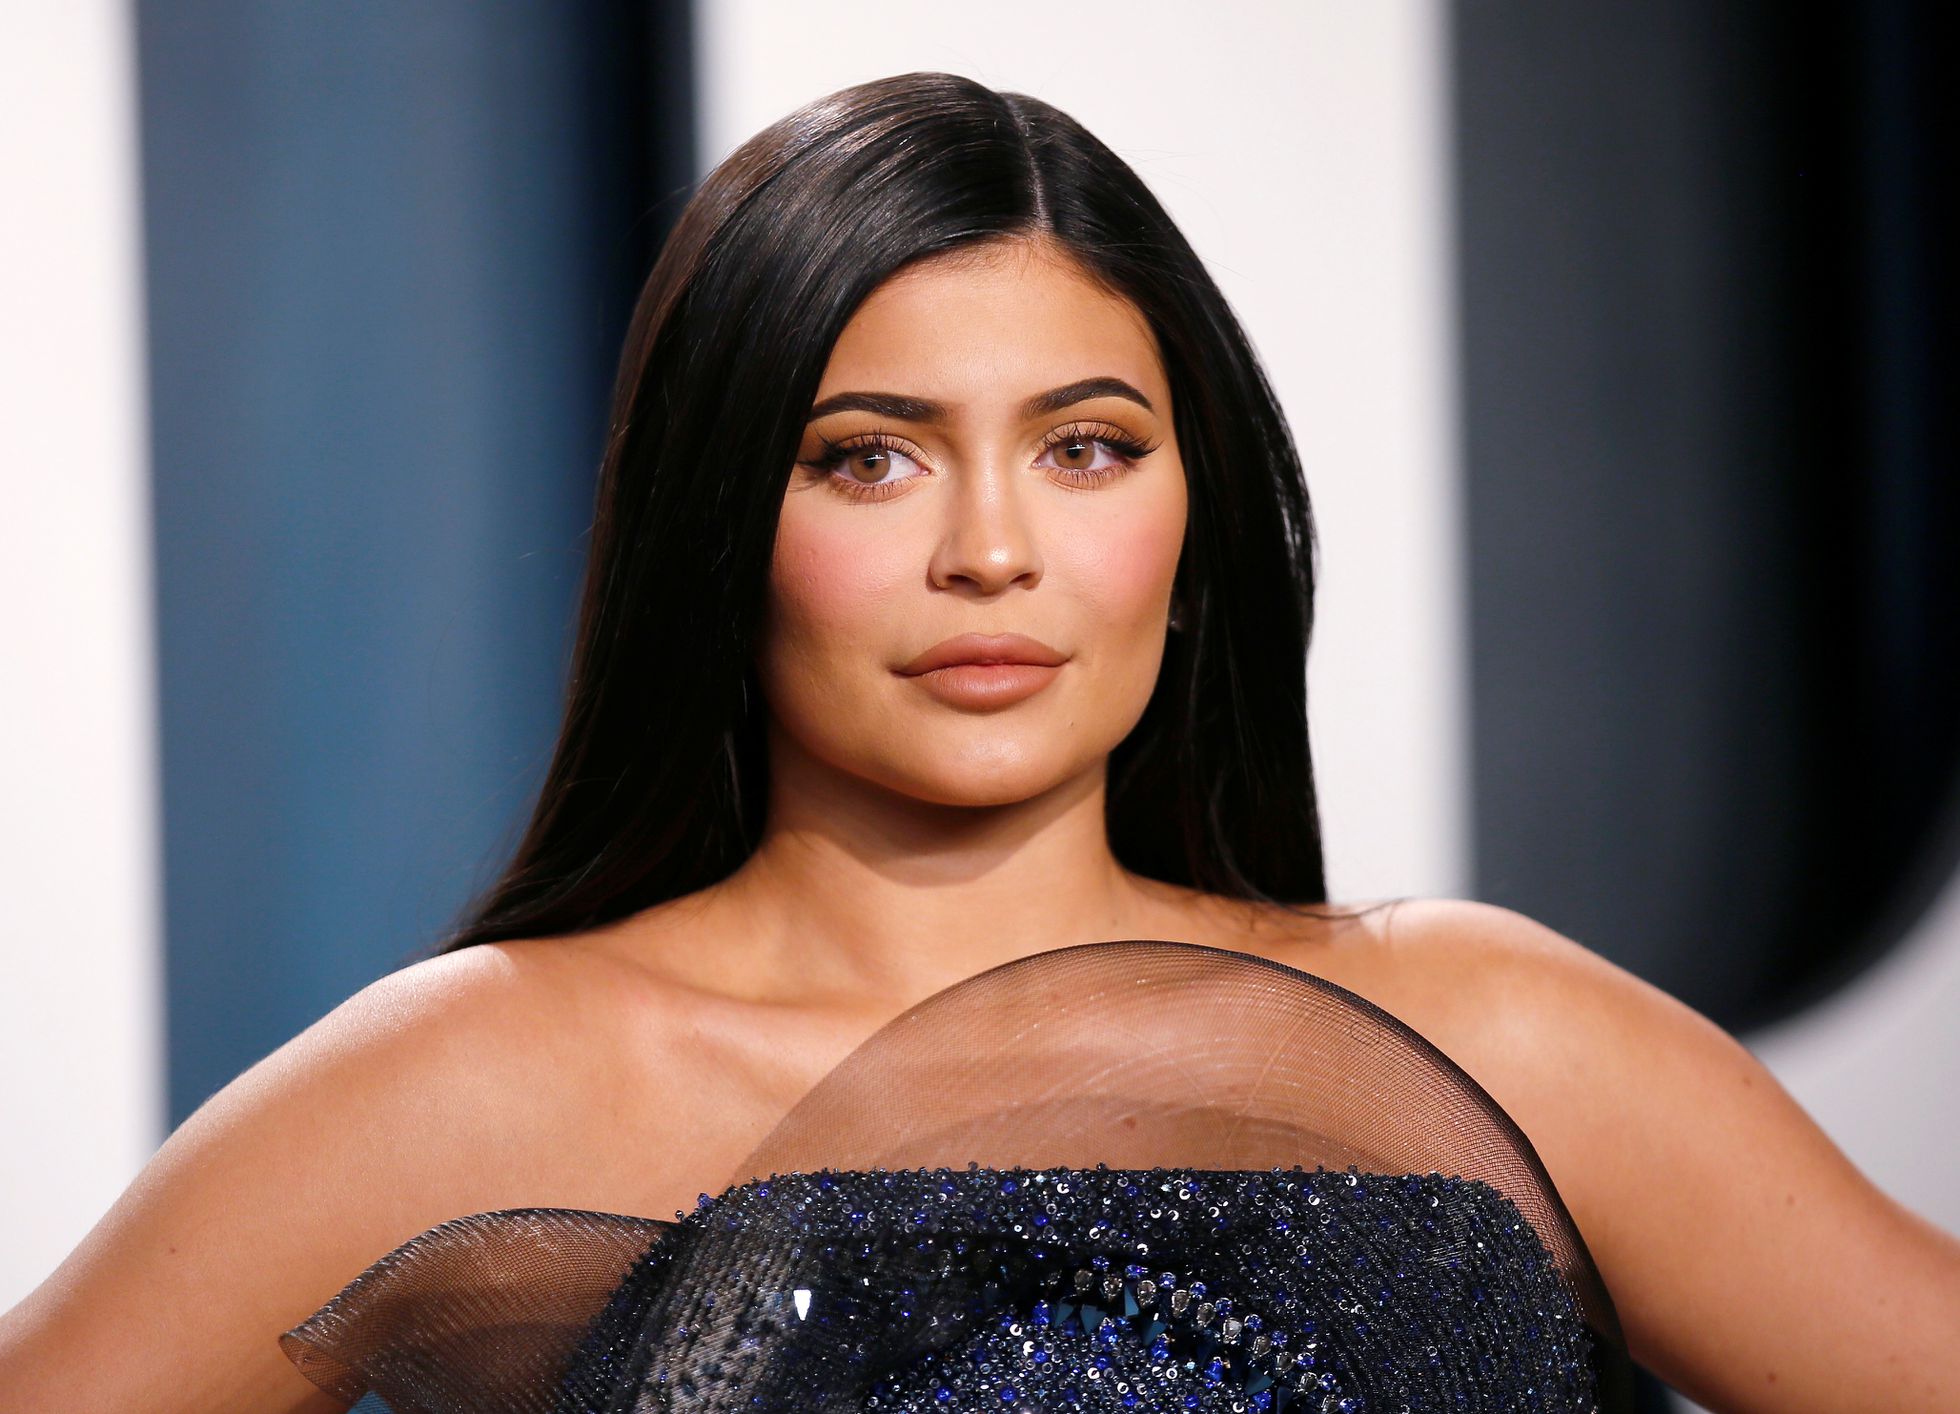 Kylie Jenner dispara totes les alarmes en portar més de 16 dies totalment desapareguda